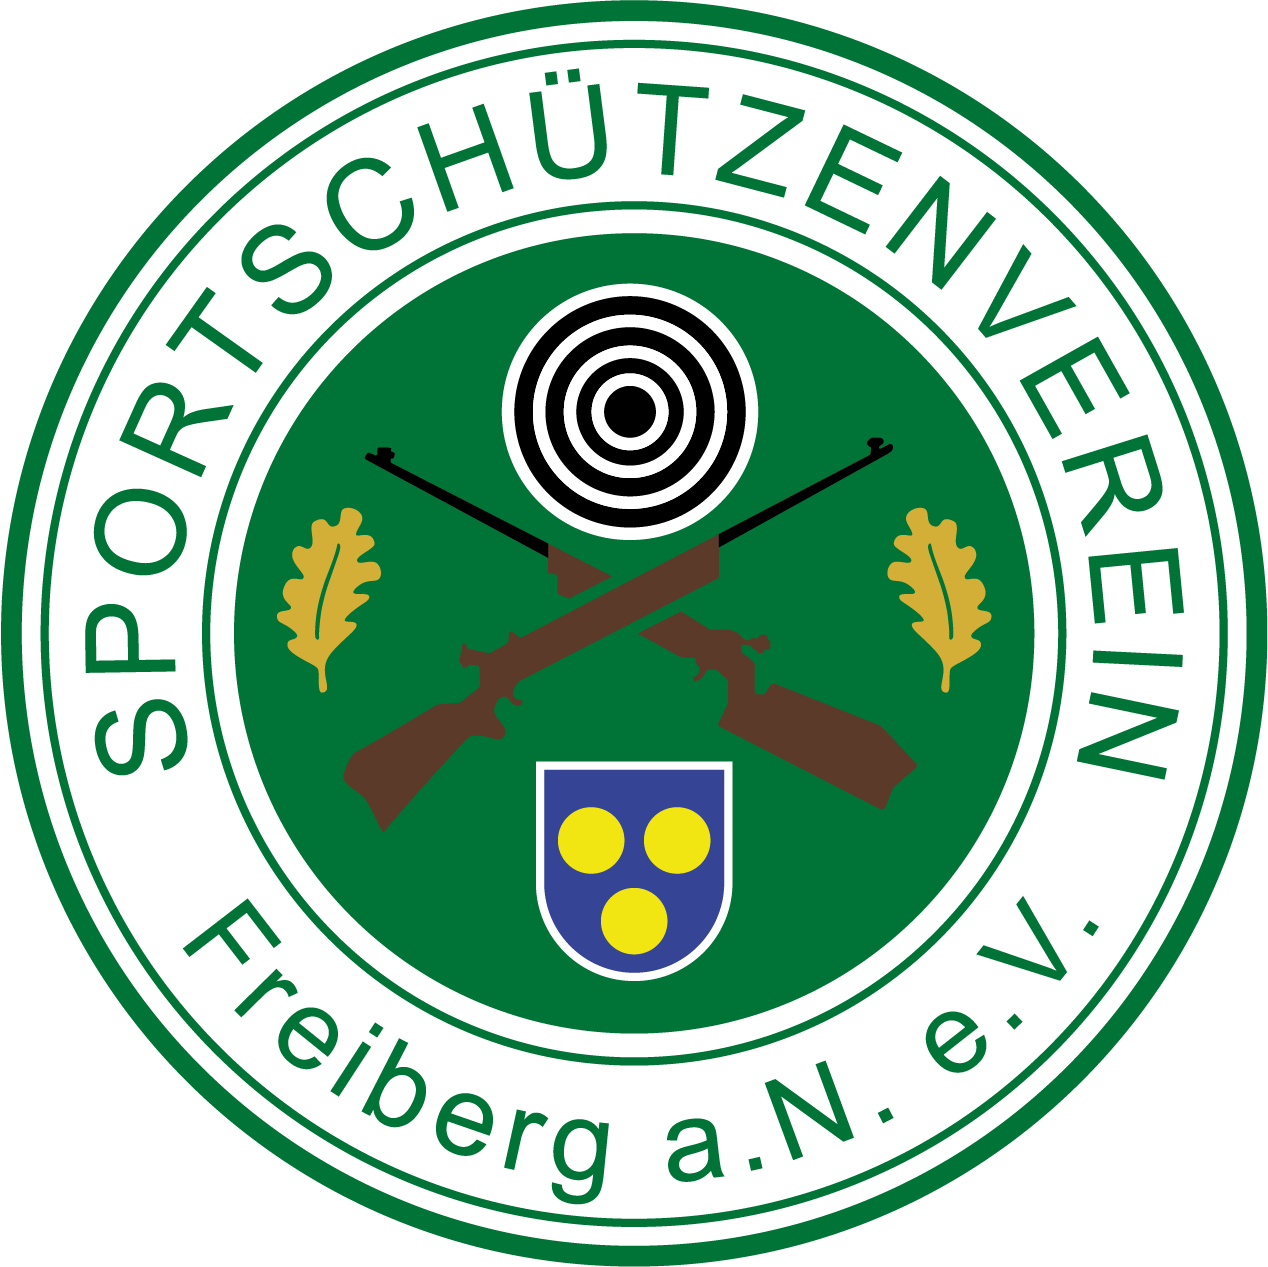 Sportschützenverein Freiberg am Neckar e.V.